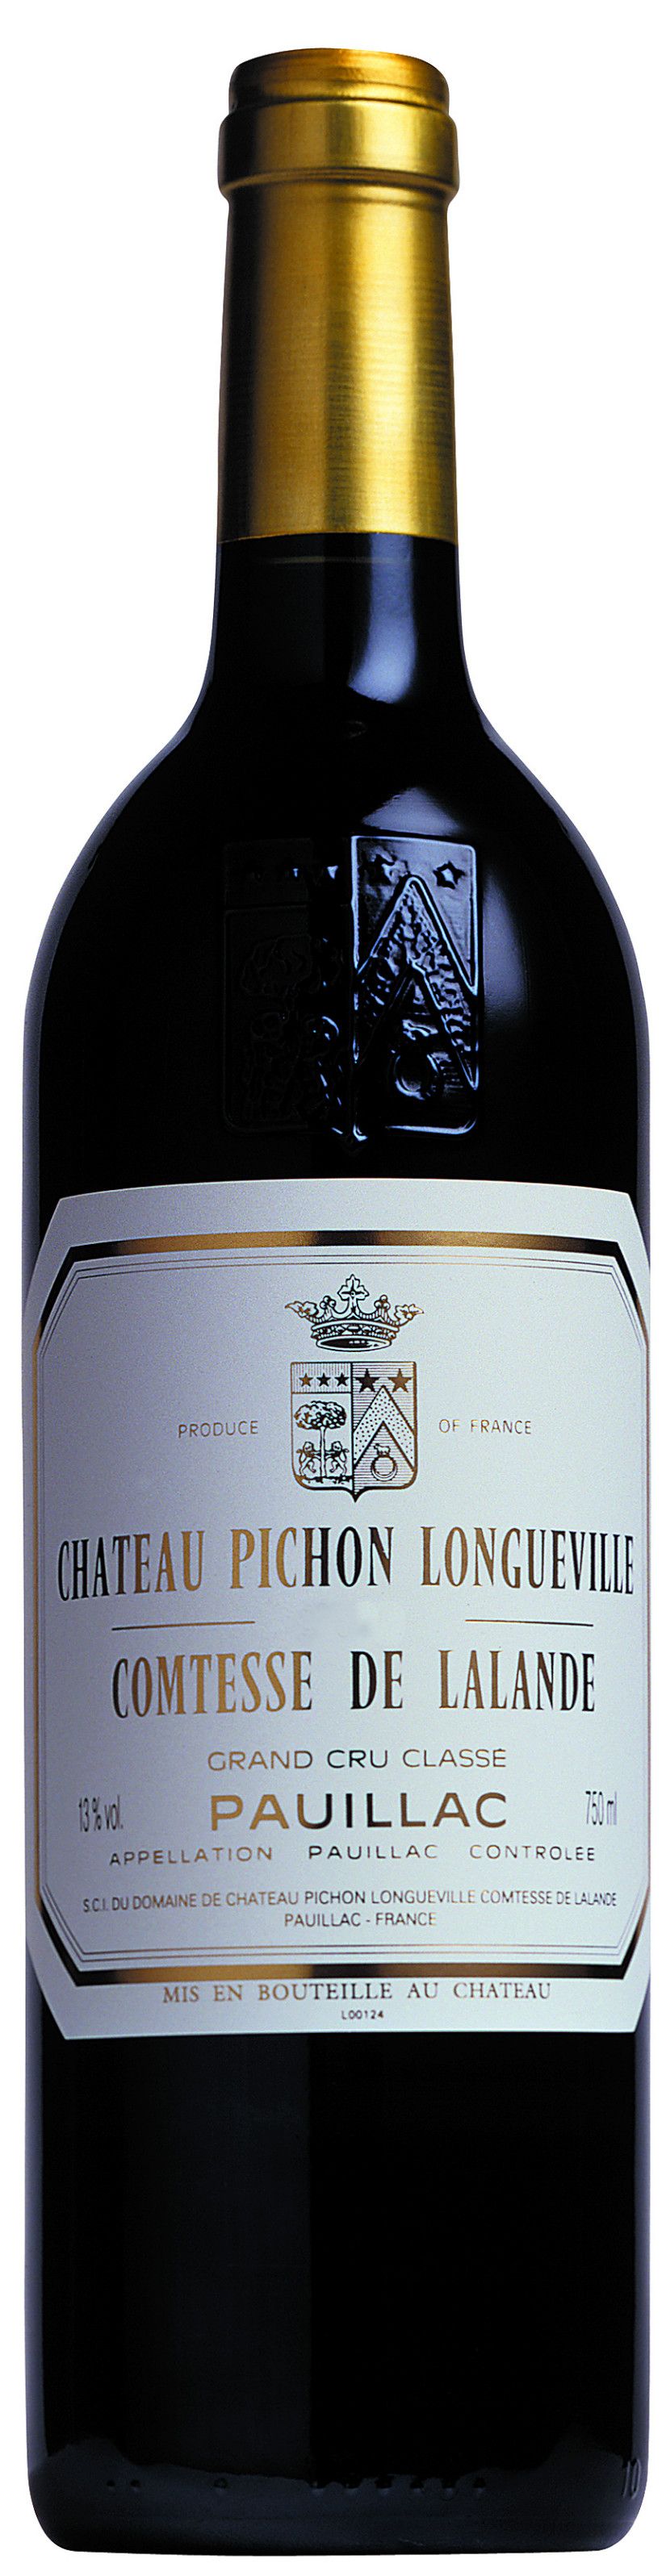 Chateau Pichon-Longueville Comtesse De Lalande, 2004